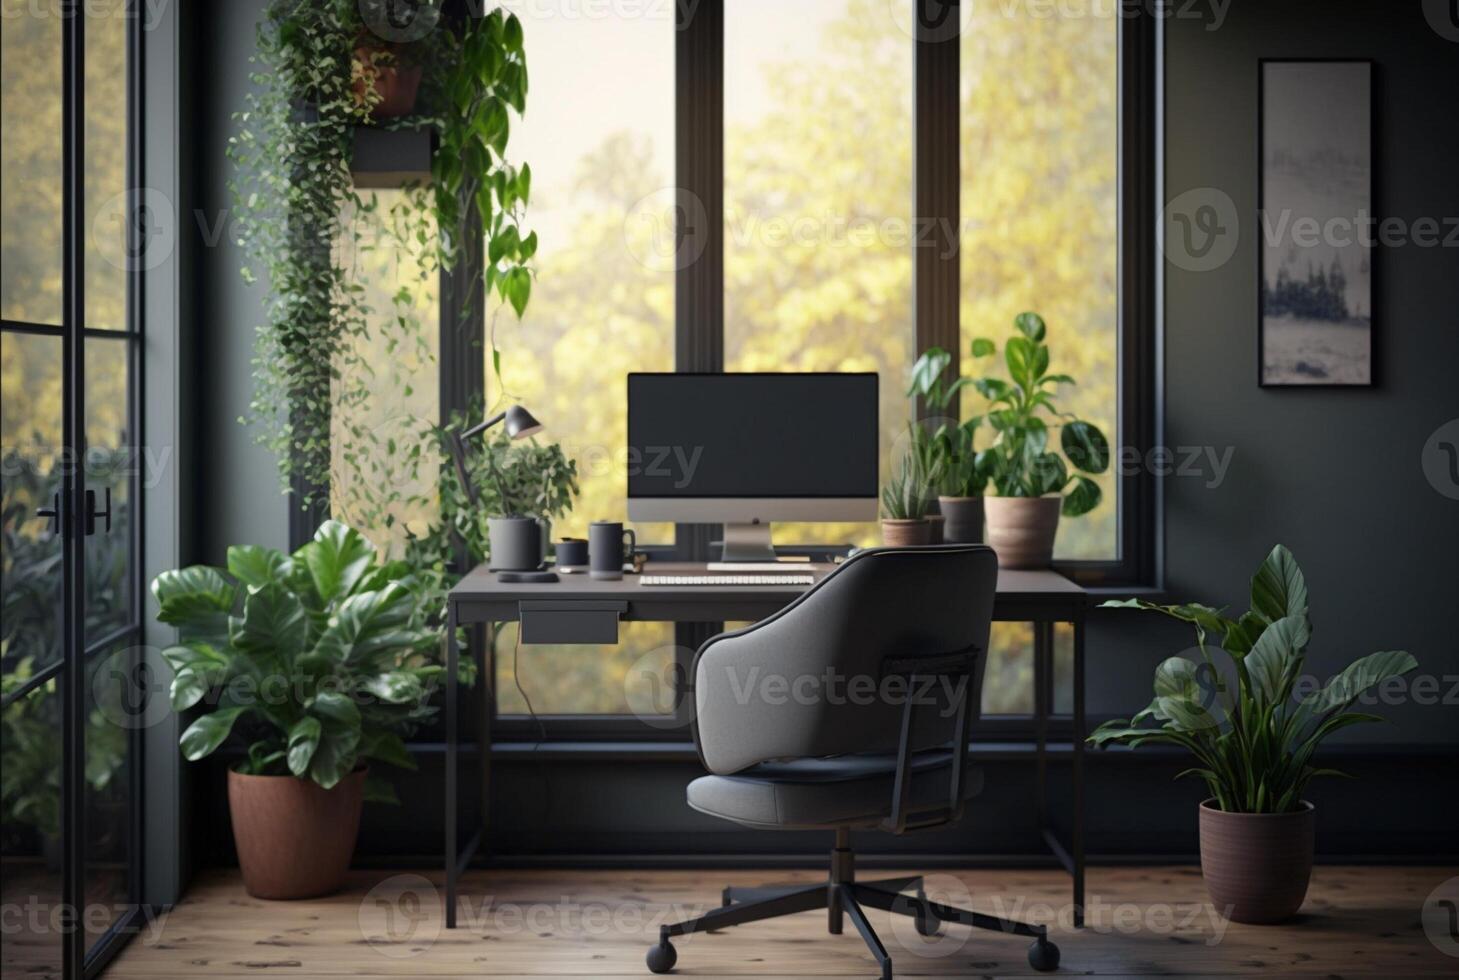 mysigt Hem kontor interiör terar möbel, krukväxter och stor fönster till låta i naturlig ljus. generativ ai foto